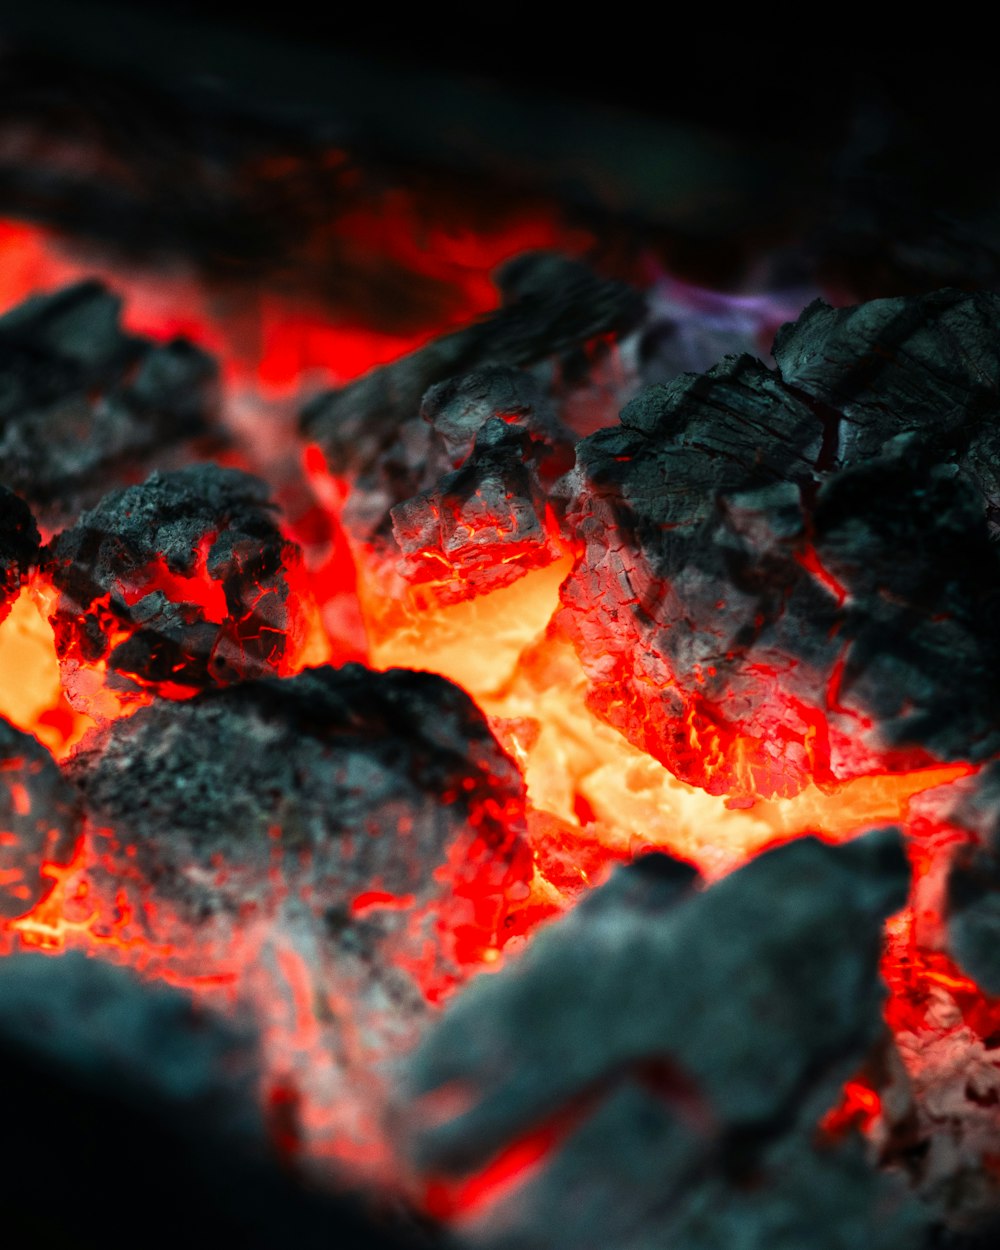 a close up of a hot coal grill